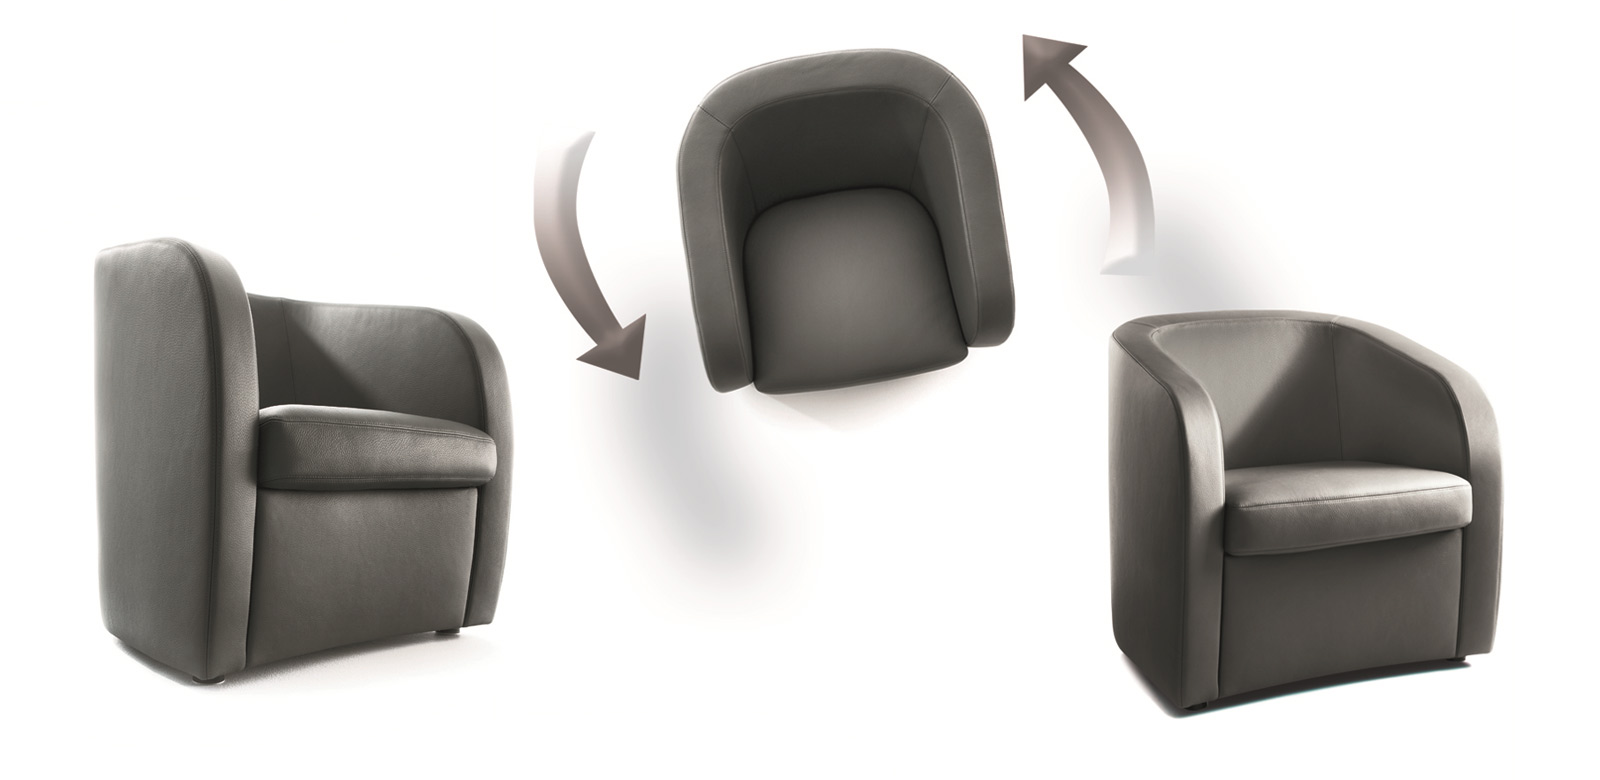 Sessel CL130 aus verschiedenen Positionen gezeigt mit Funktionen